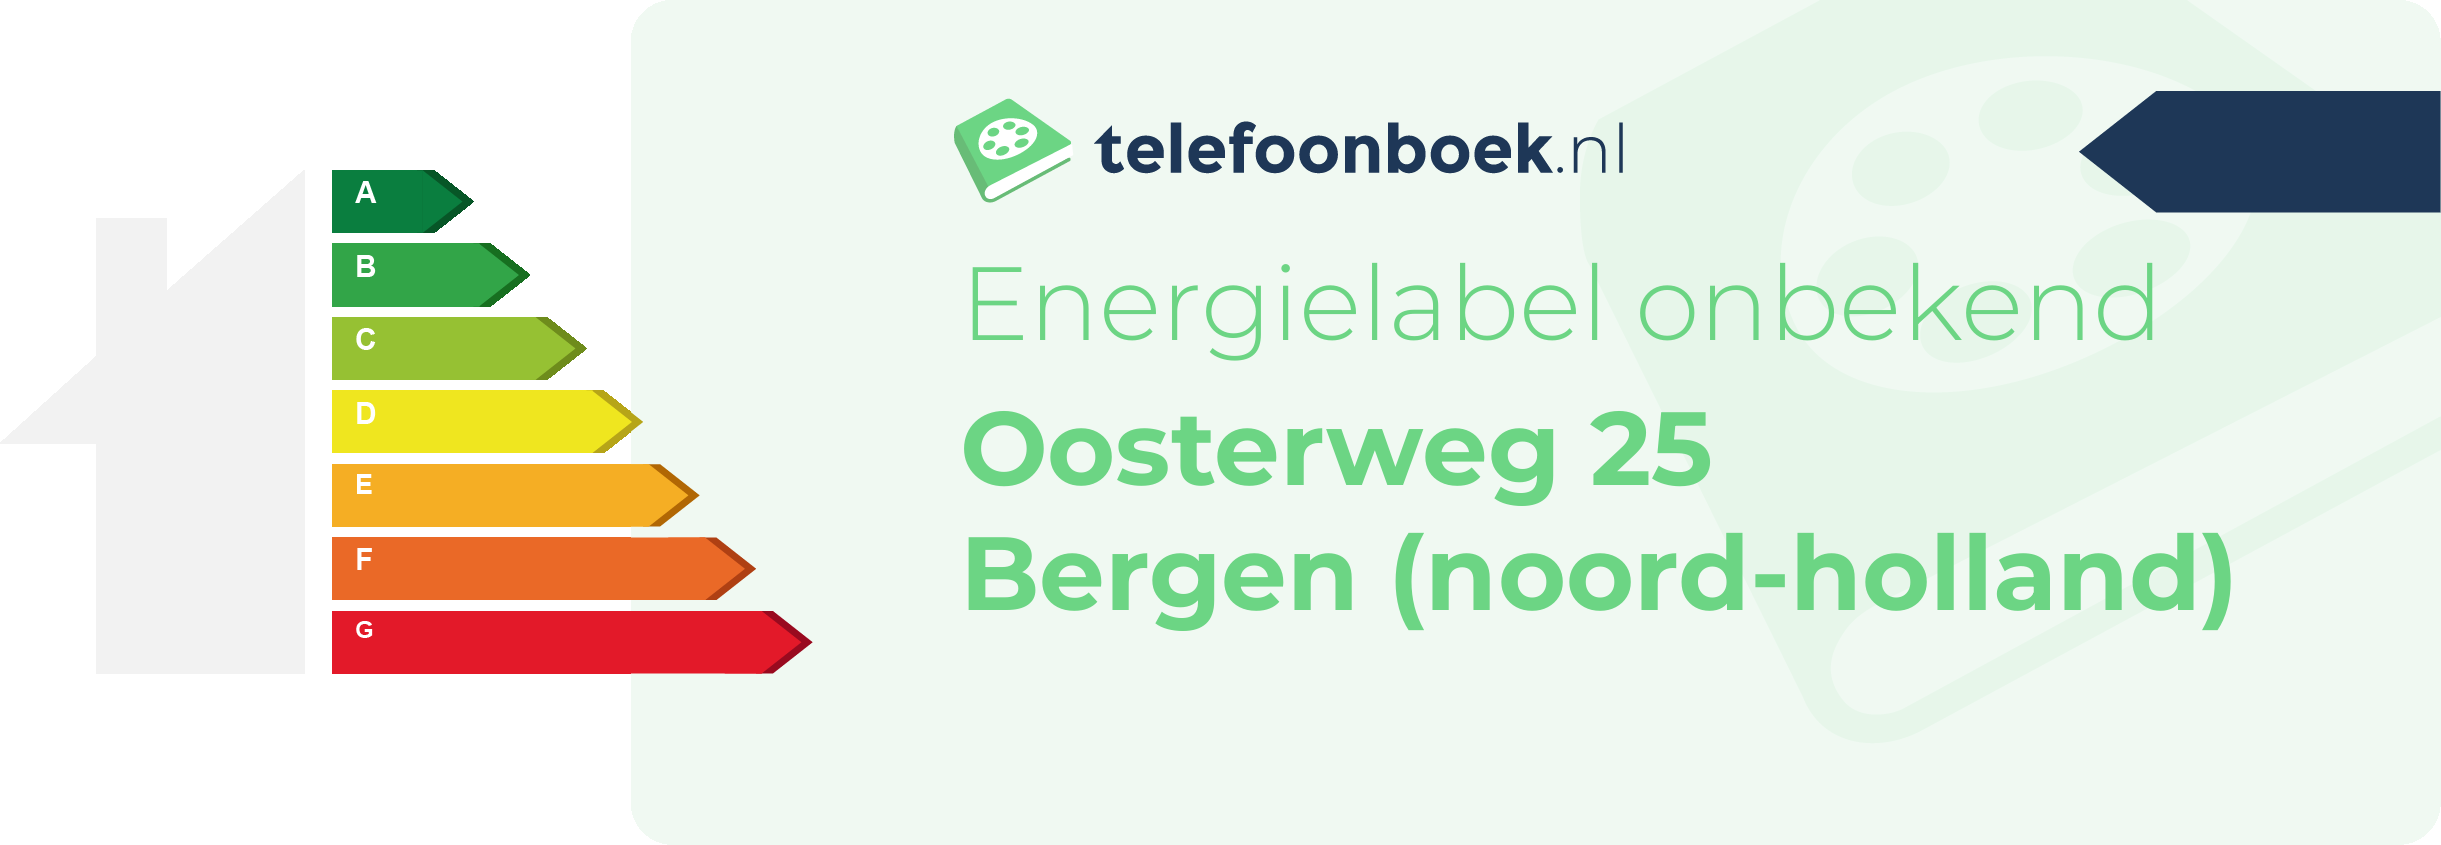 Energielabel Oosterweg 25 Bergen (Noord-Holland)